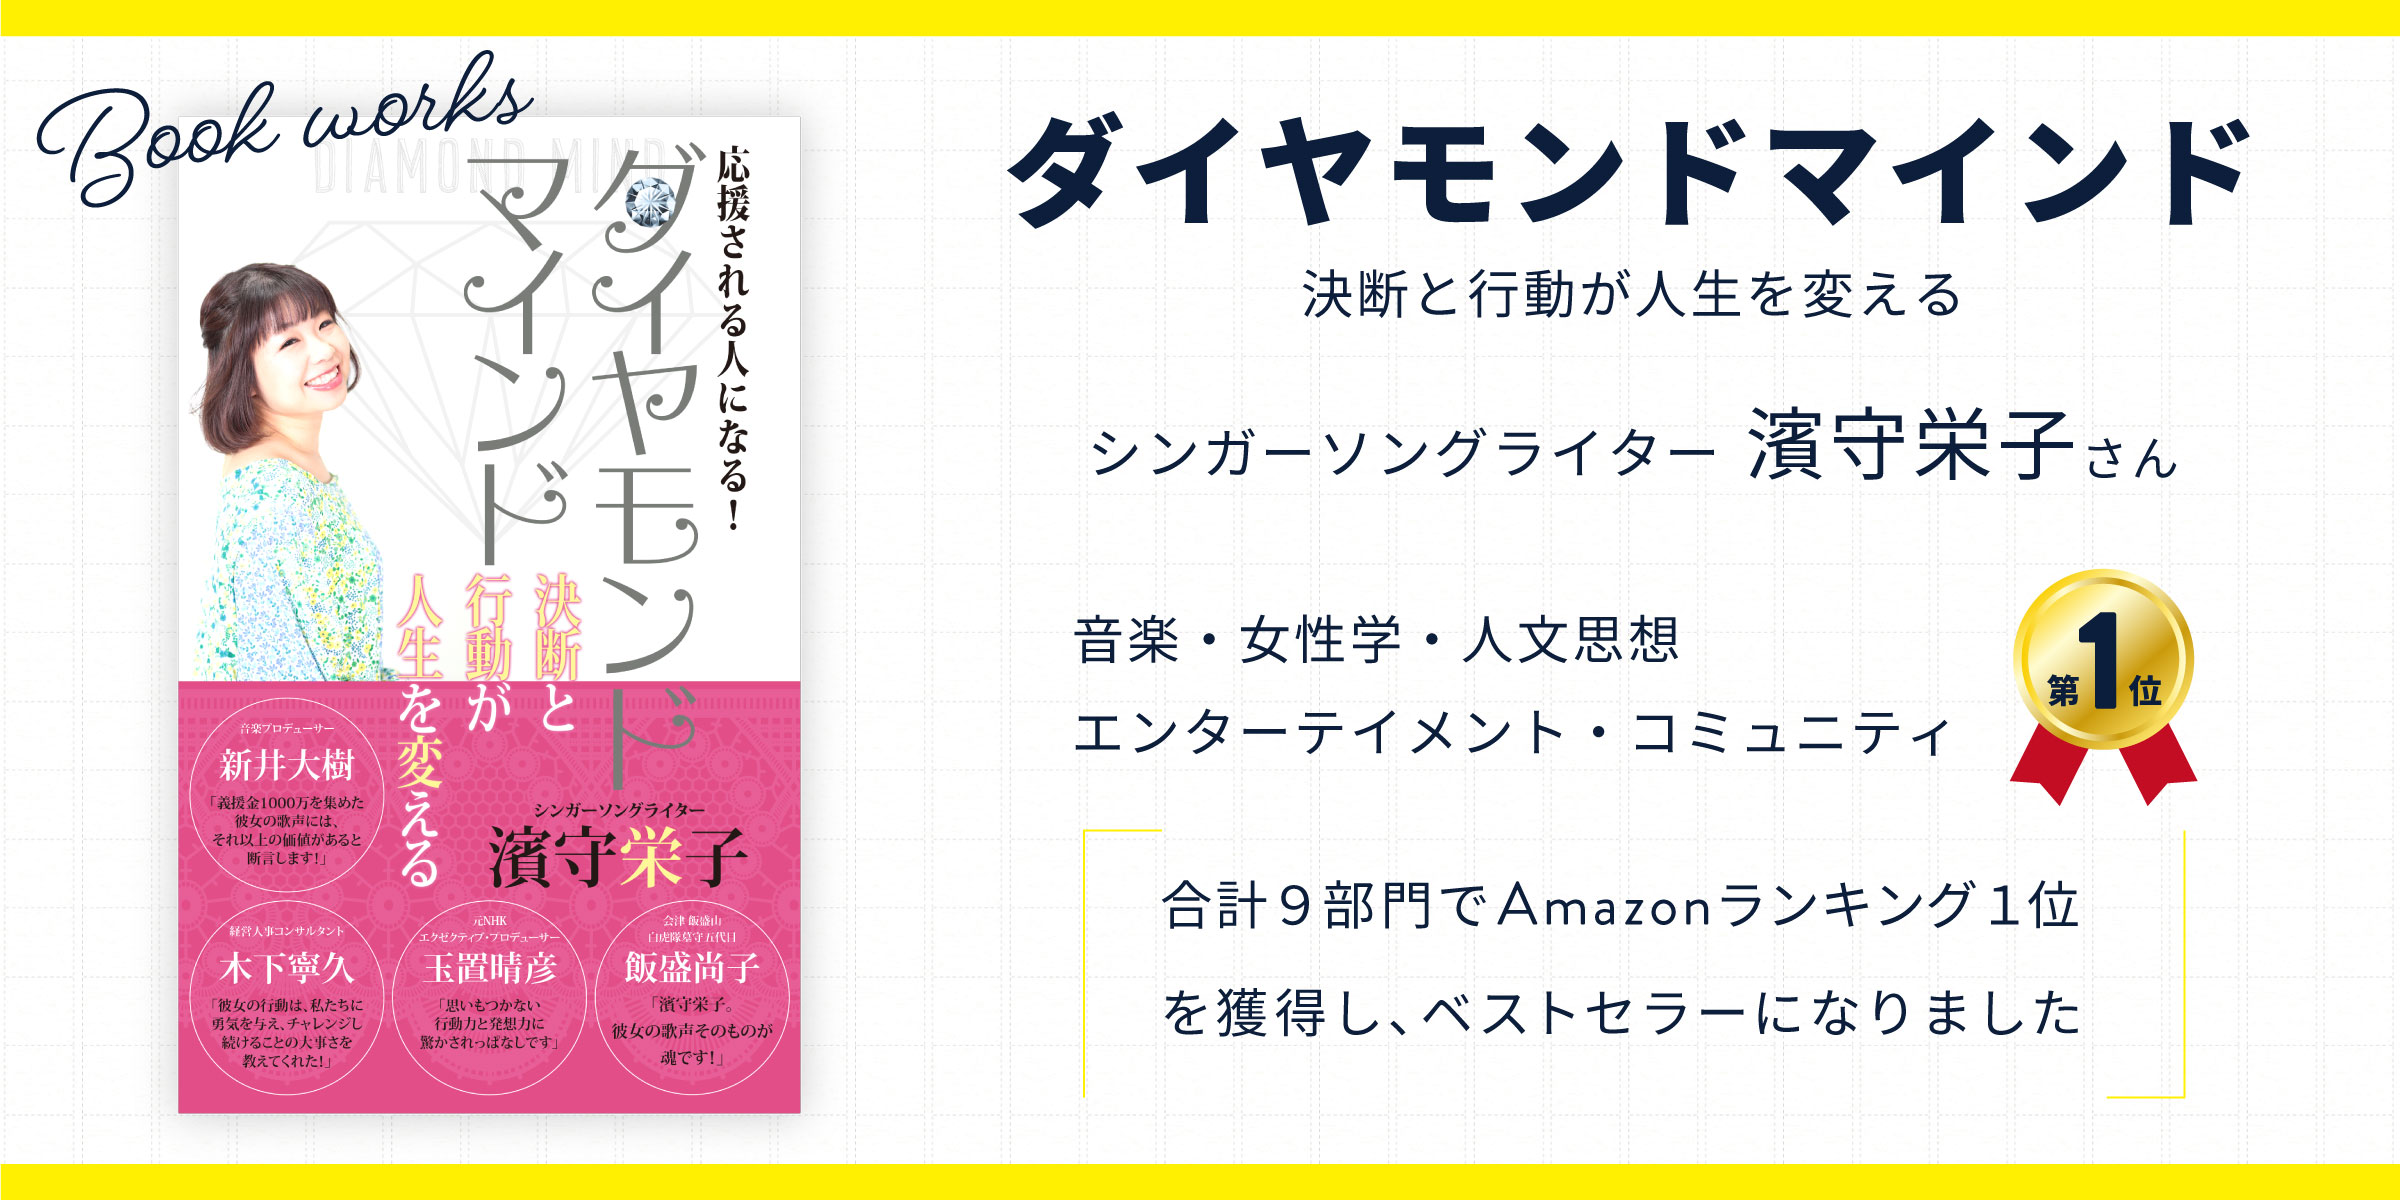 シンガーソングライターの「濱守栄子」さんが本を出版されました